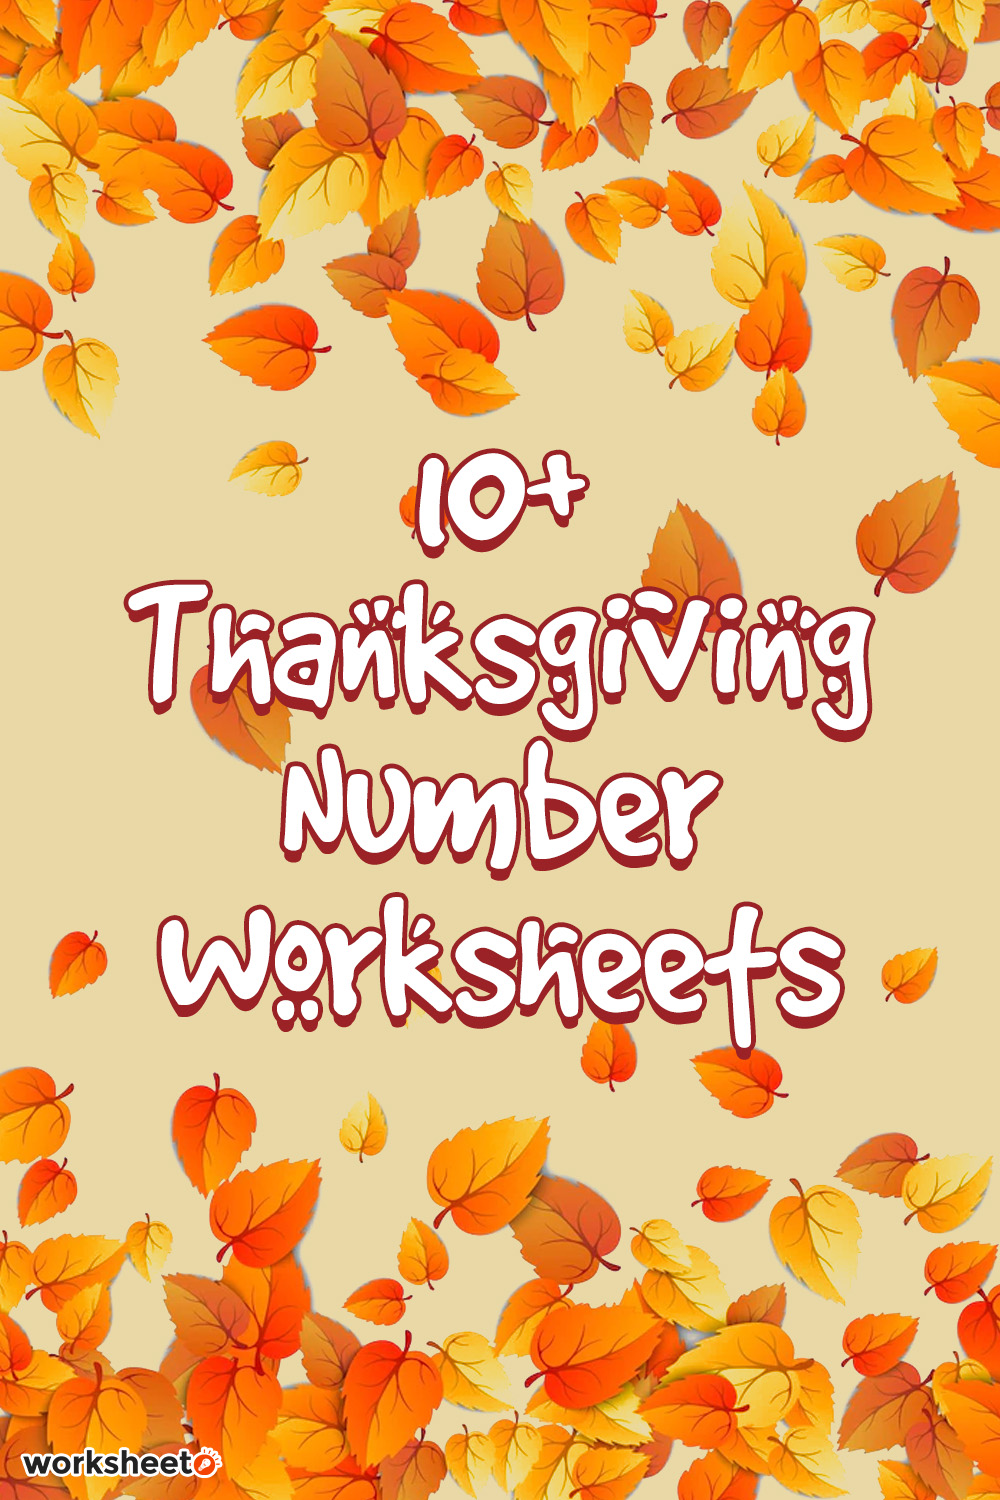 14-thanksgiving-number-worksheets-worksheeto